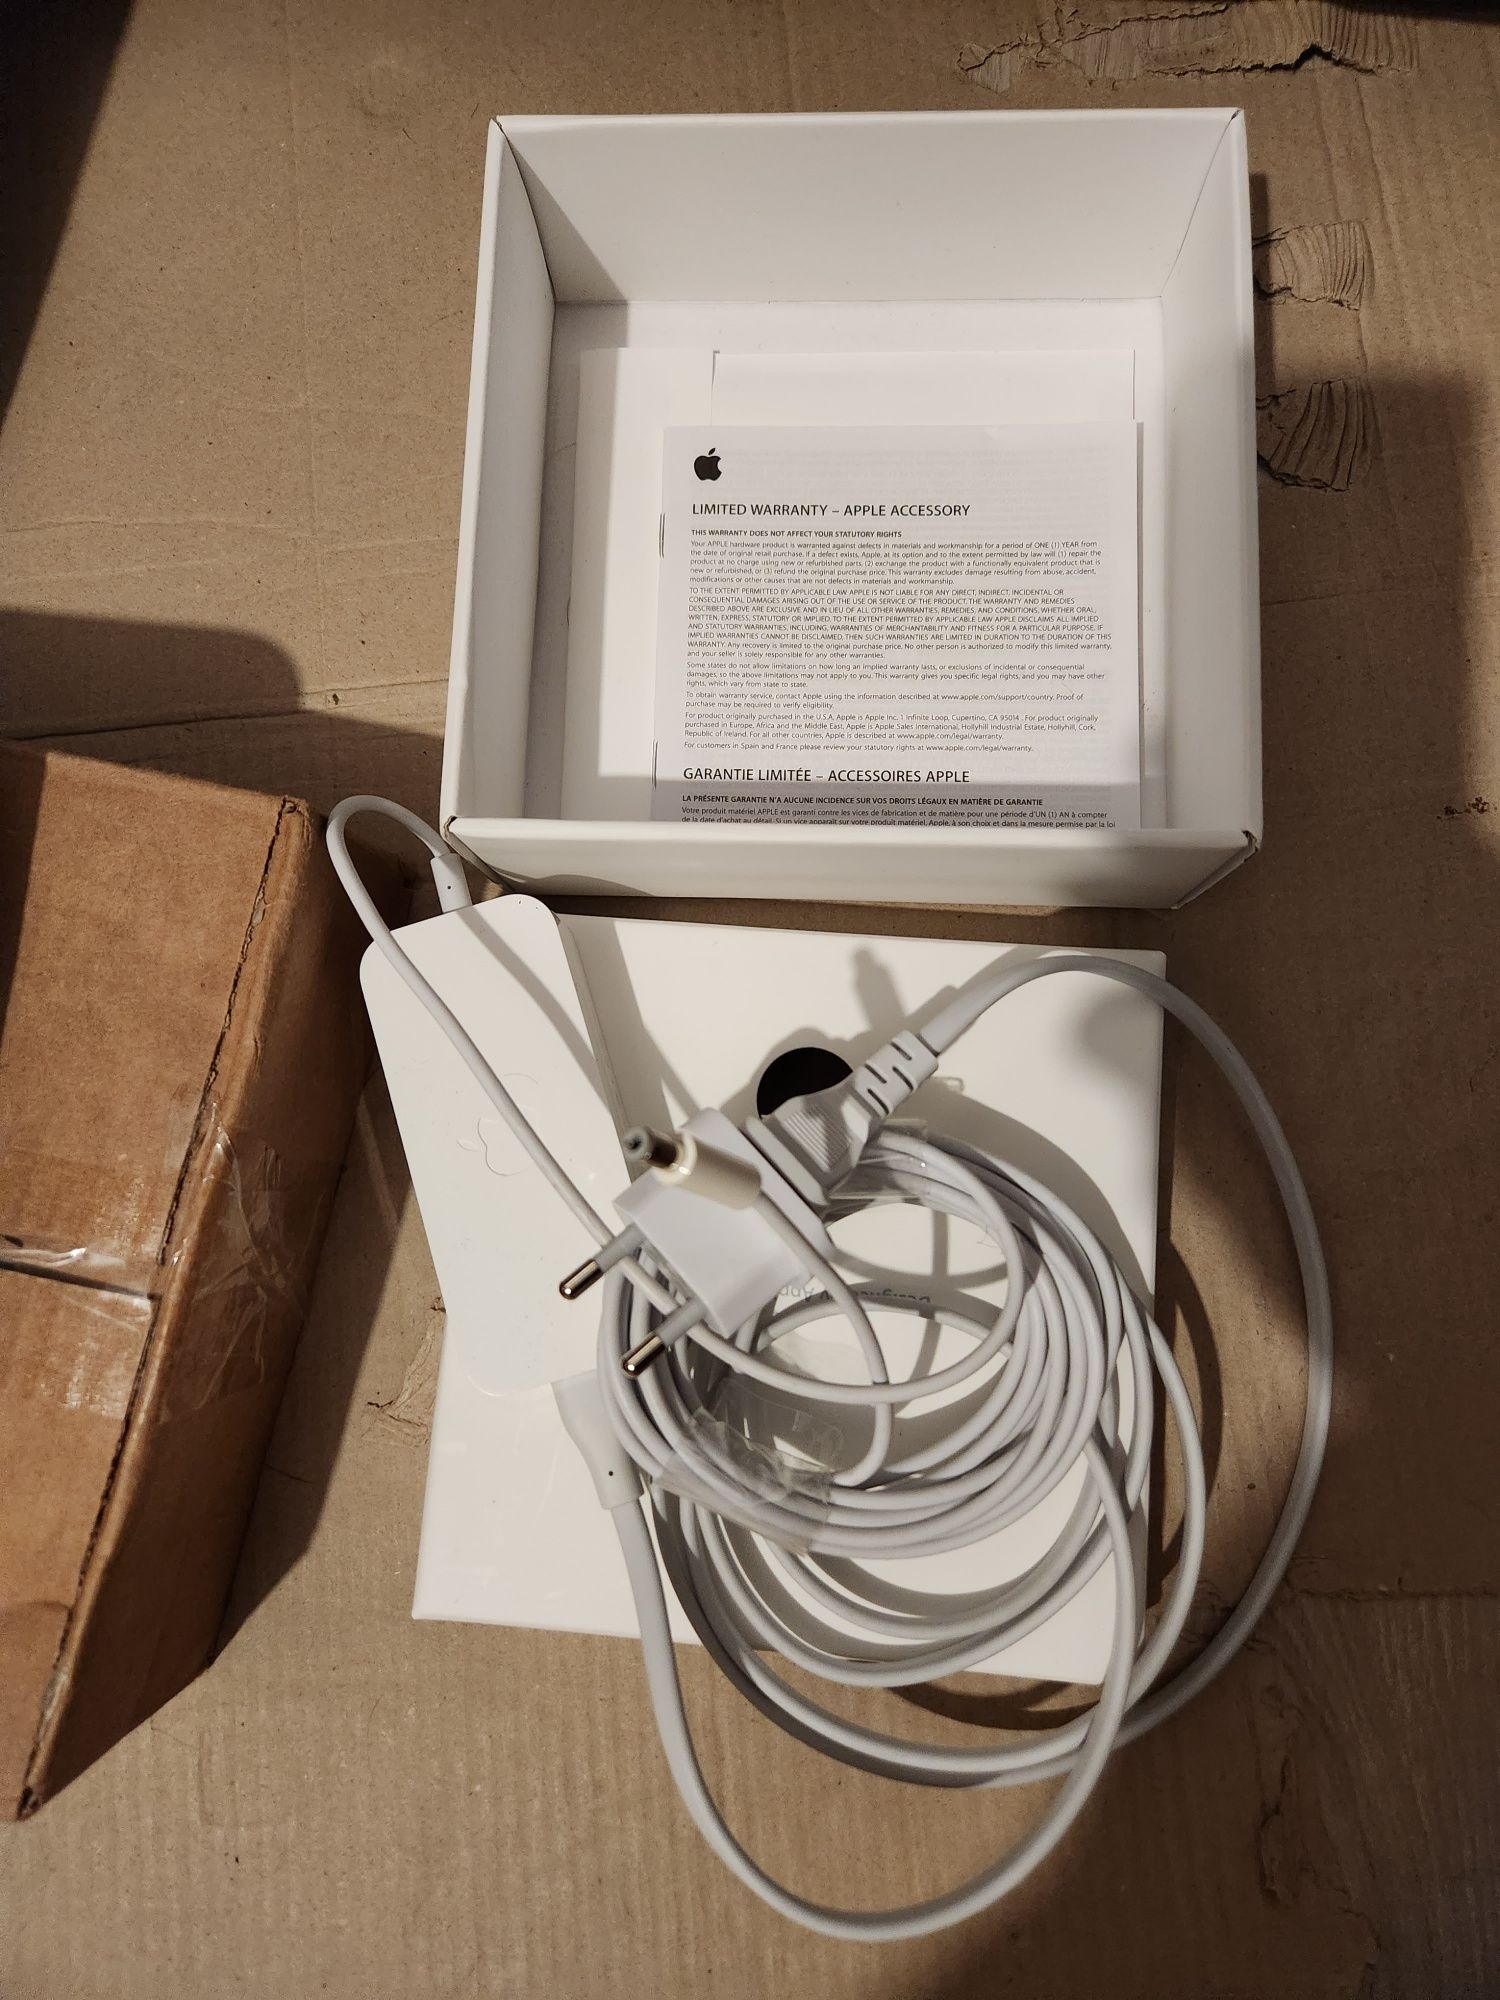 Wifi роутер Apple A1408 5-те покоління